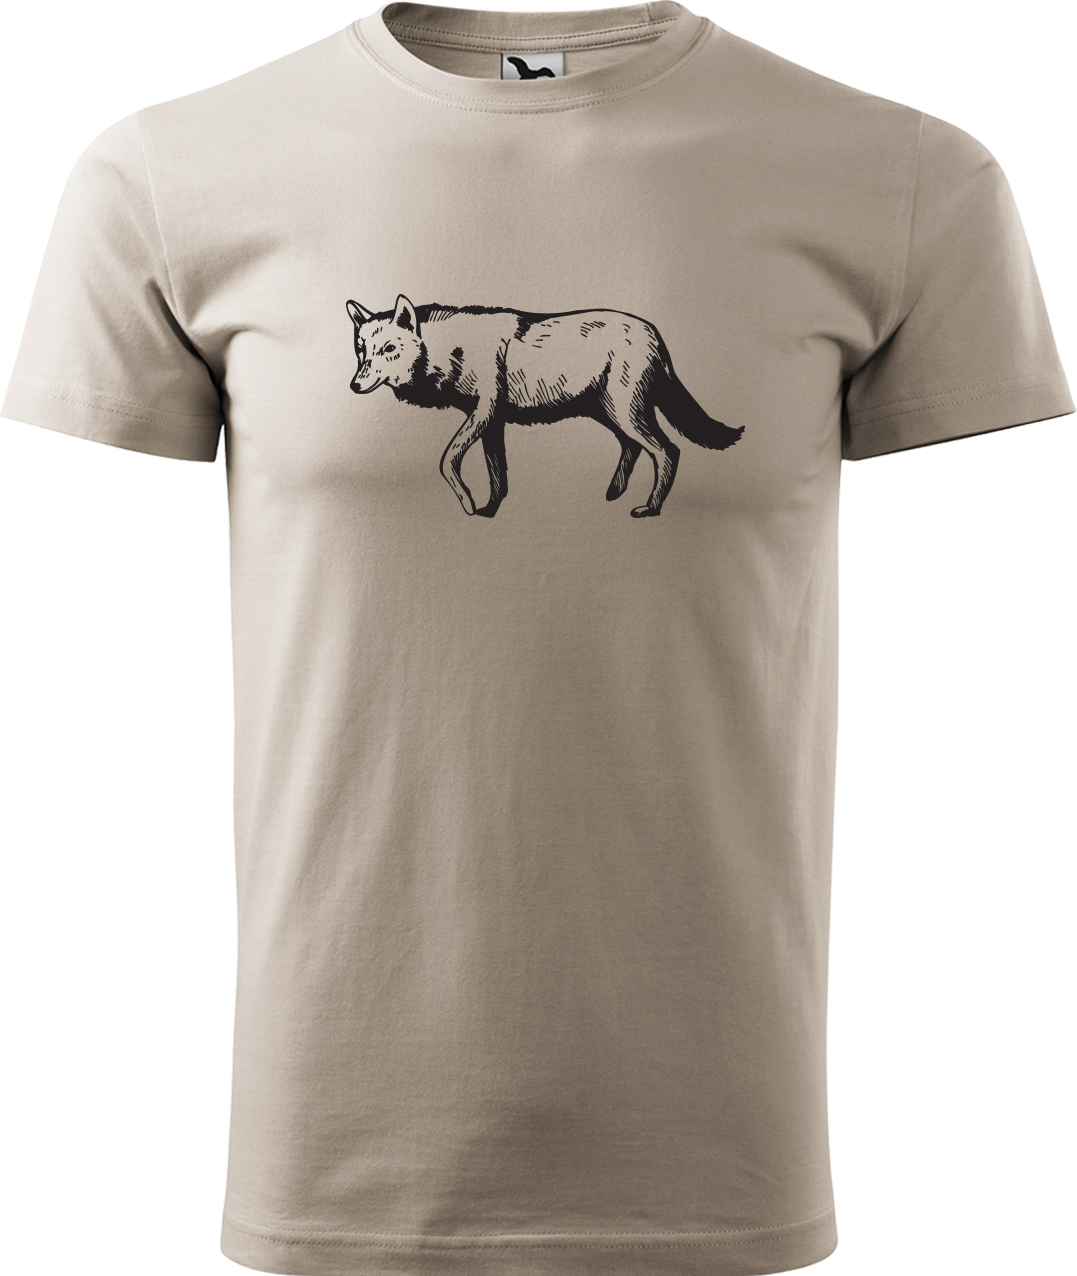 Pánské tričko s vlkem - Vlk Velikost: S, Barva: Ledově šedá (51), Střih: pánský